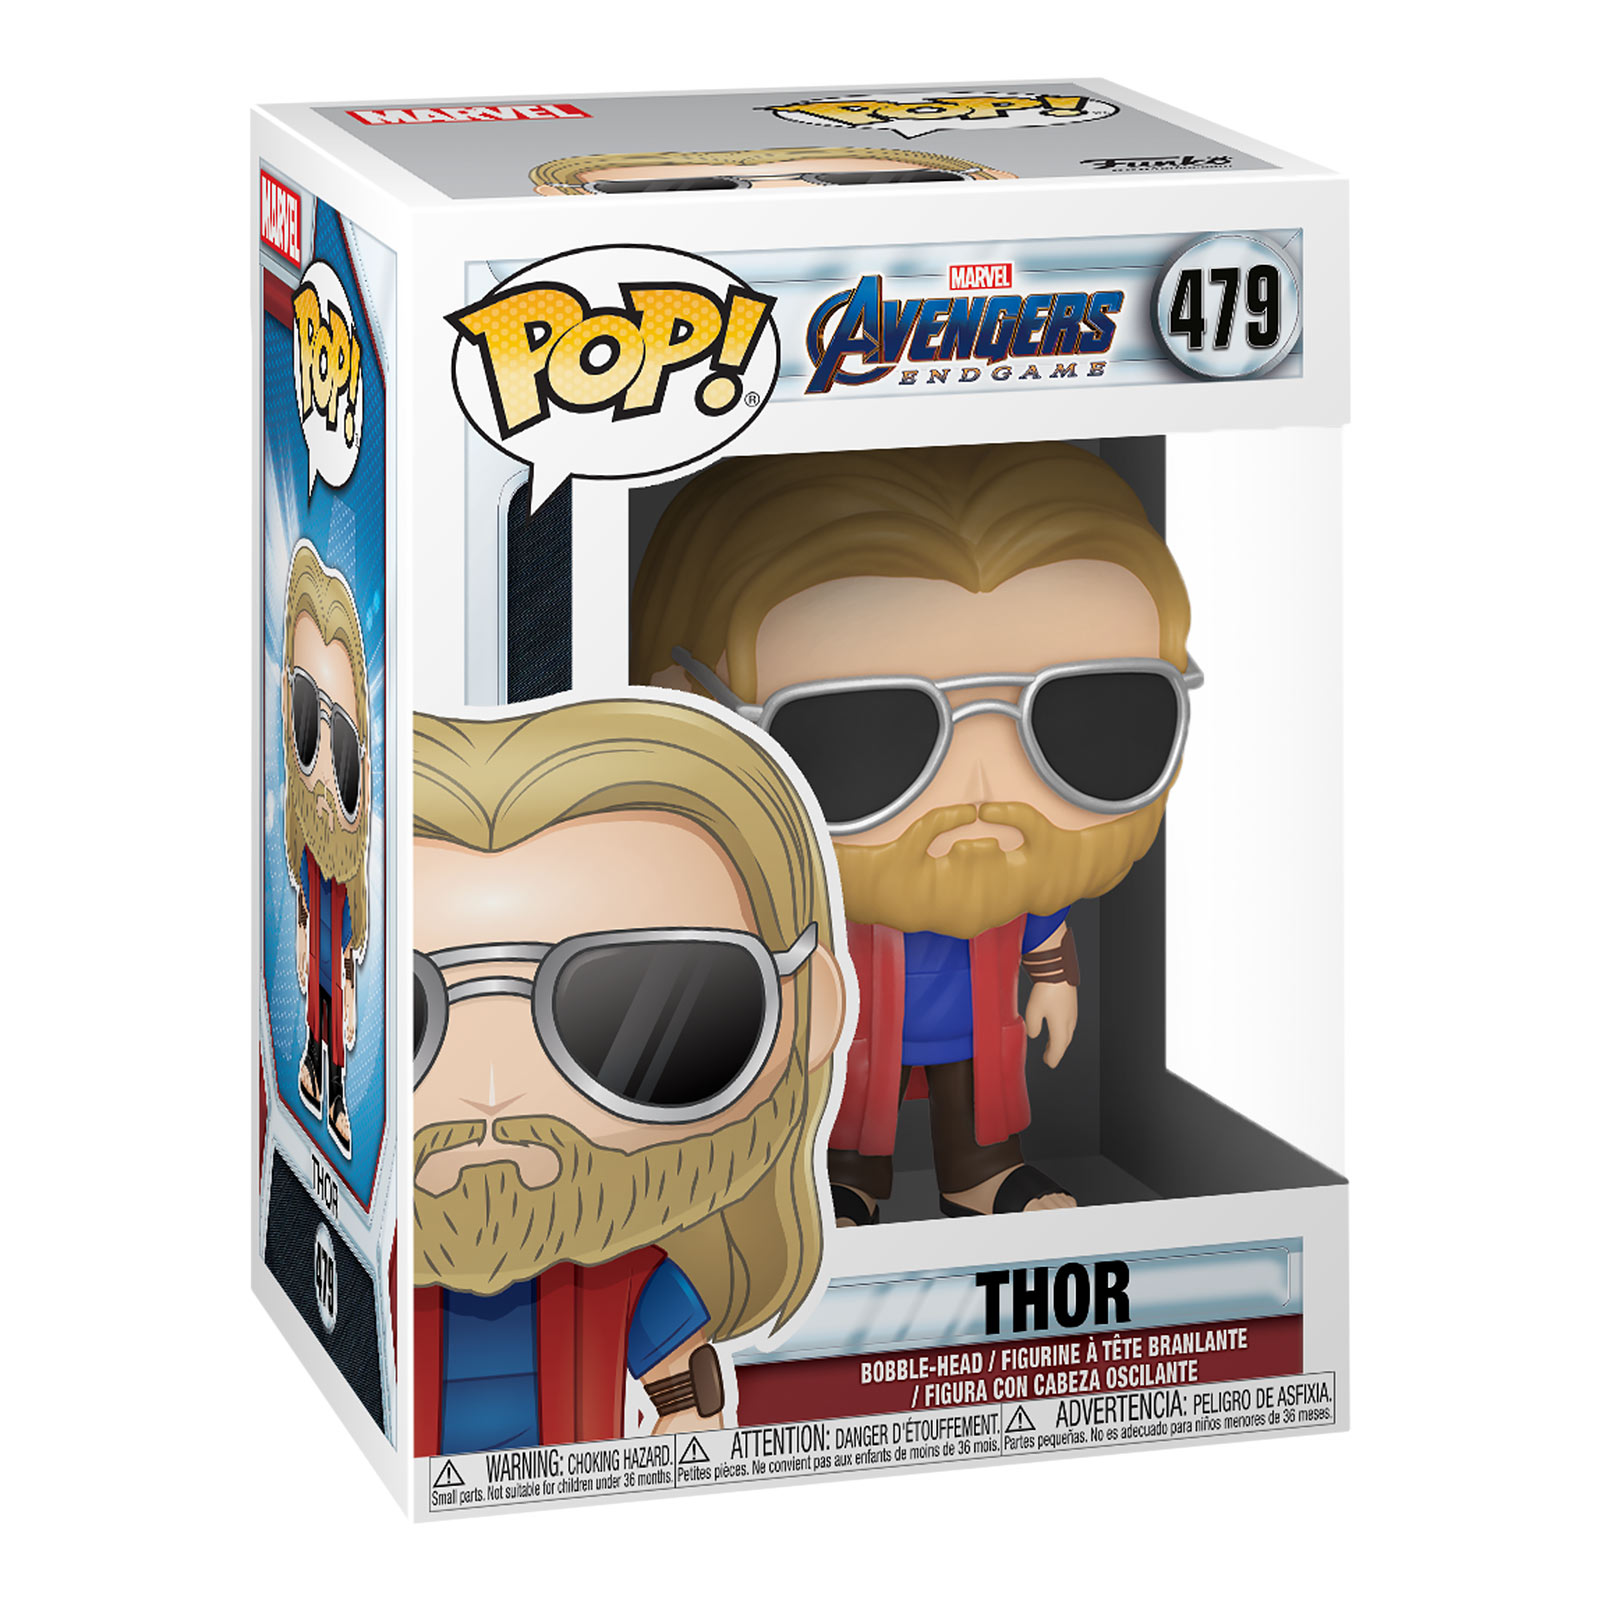 Avengers - Thor avec lunettes de soleil Endgame Funko Pop figurine à tête branlante